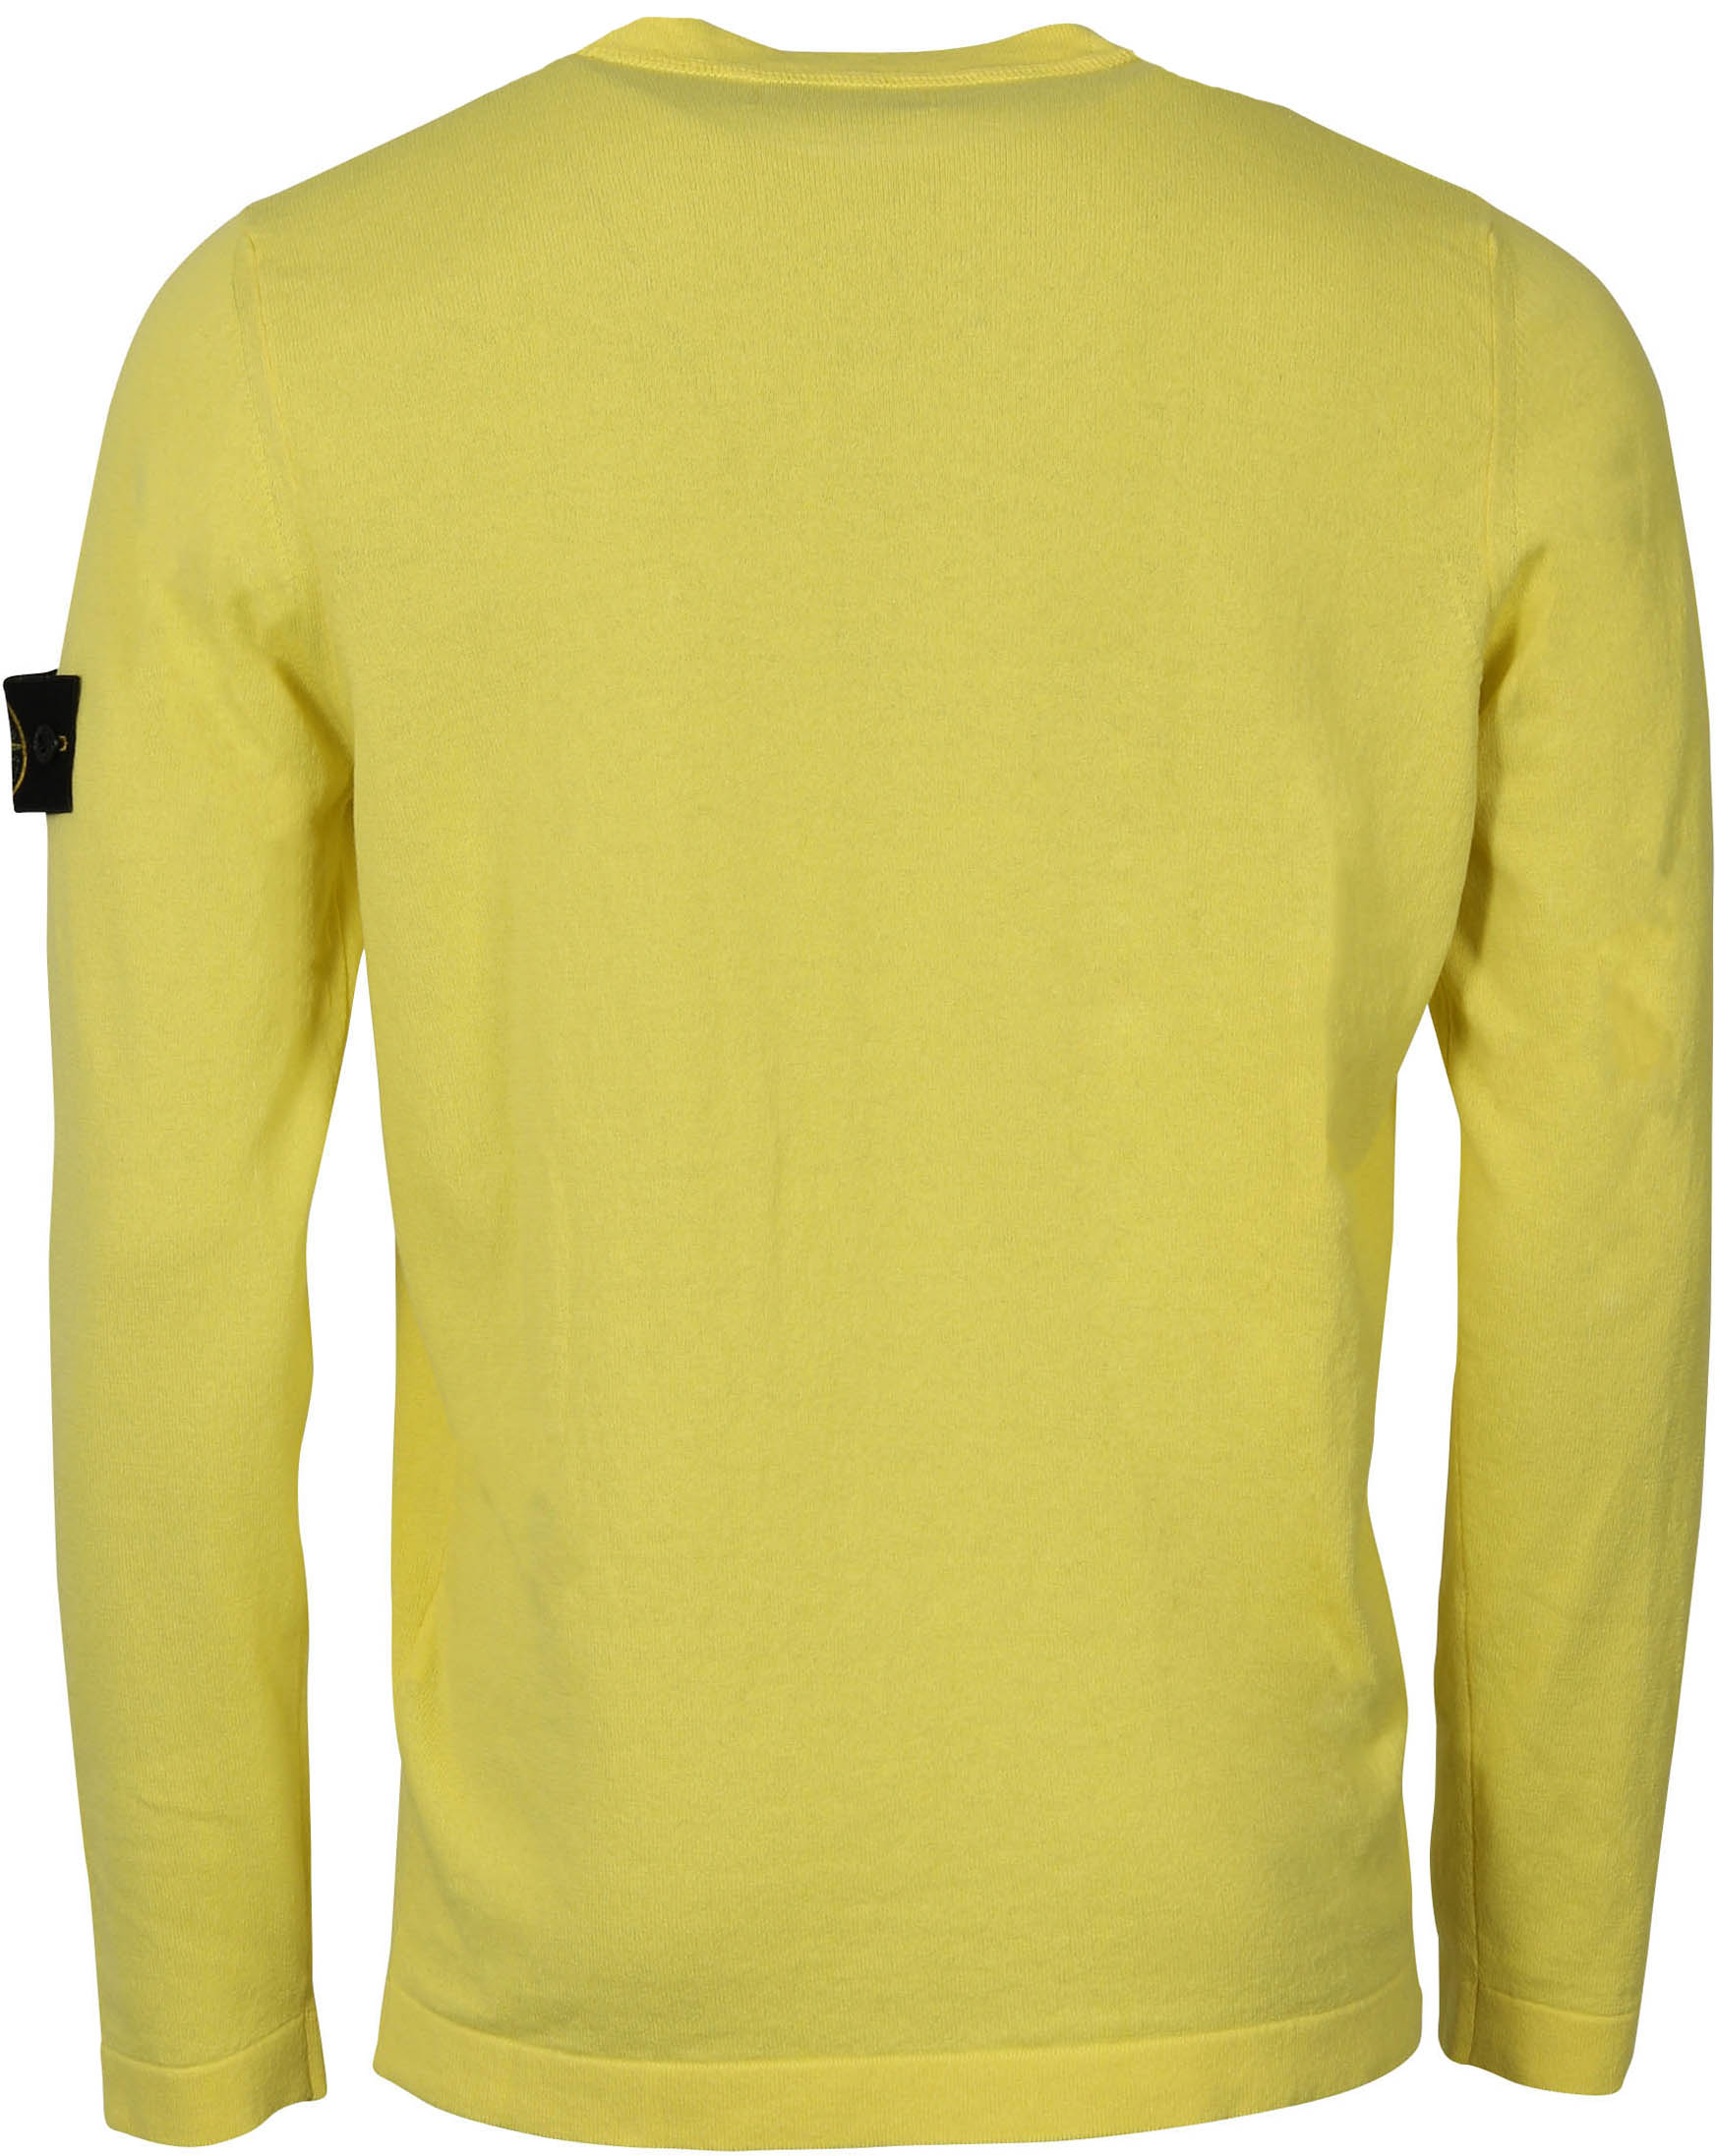 Stone Island Knit Sweater Yellow XL